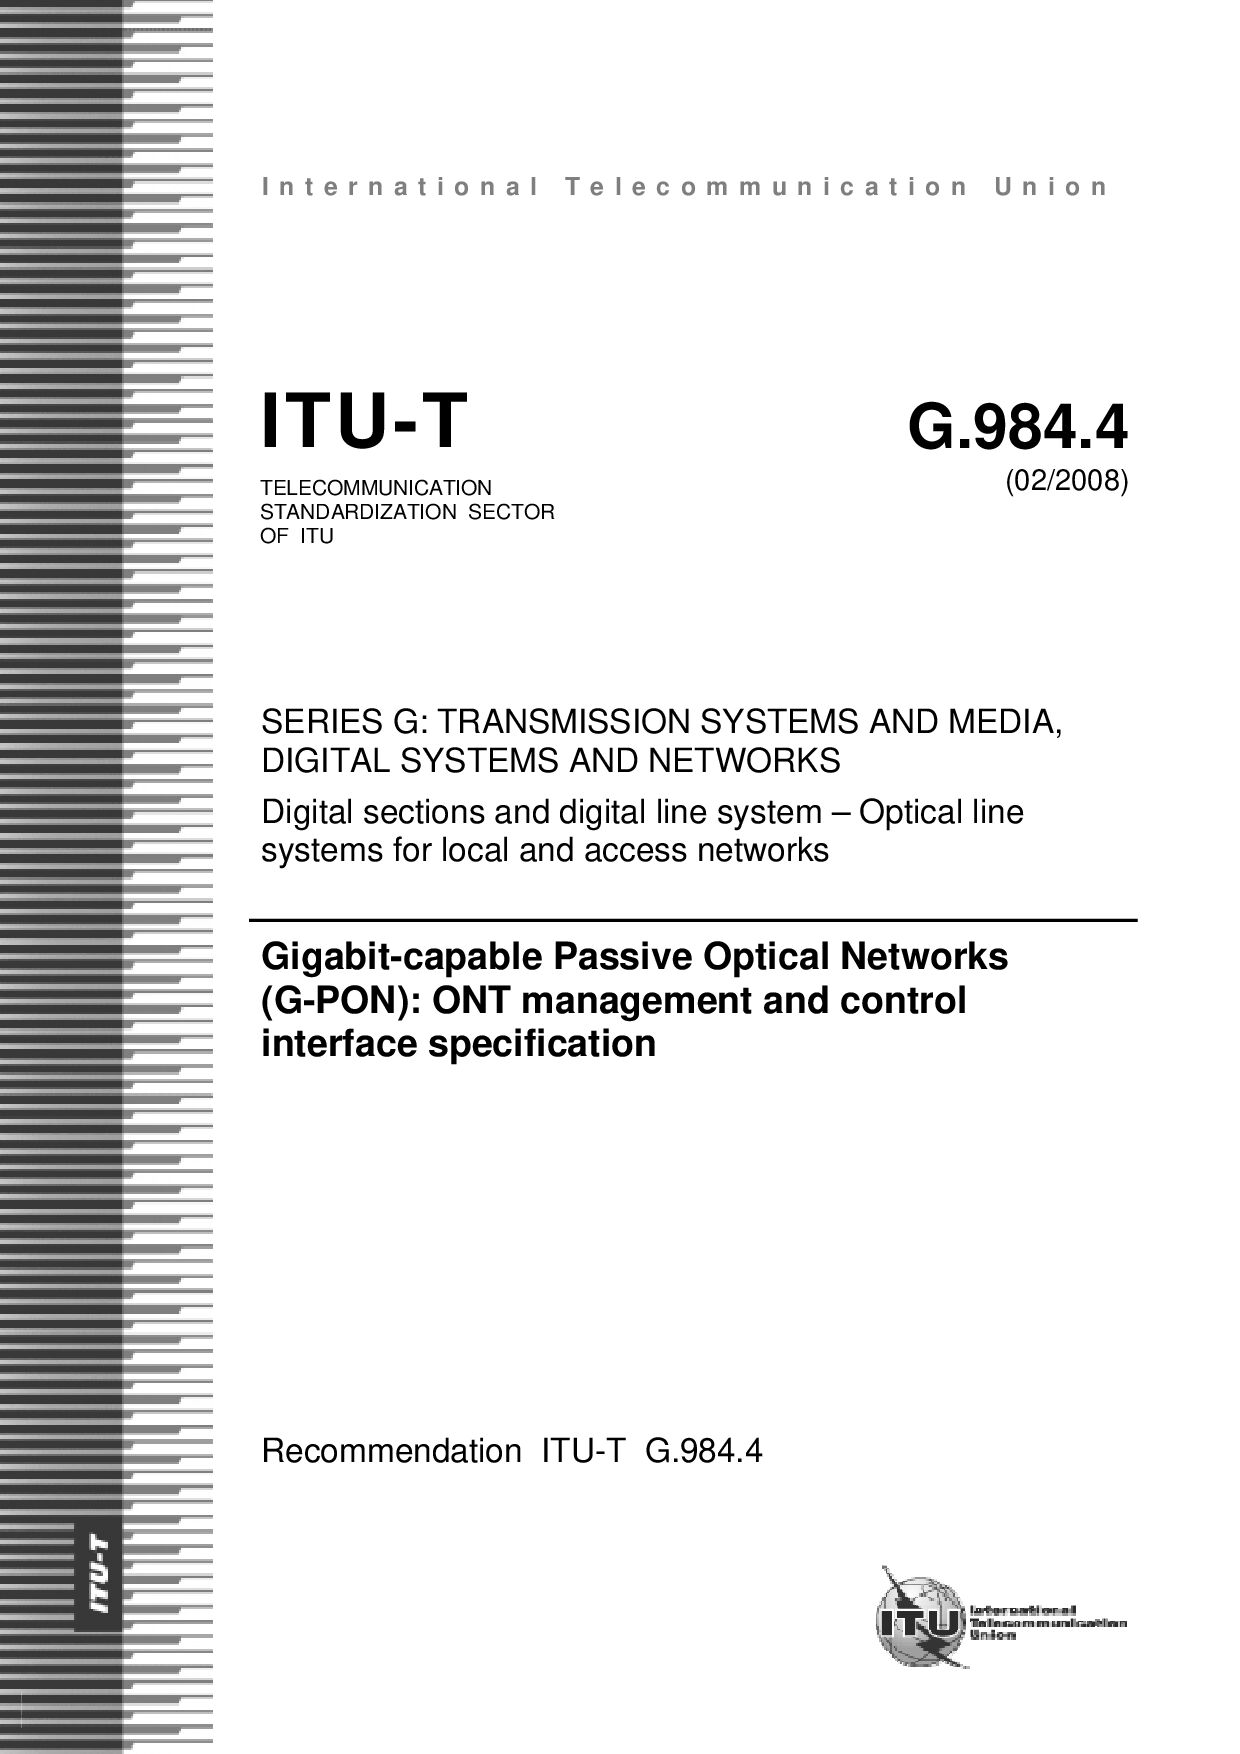 ITU-T G.984.4-2008